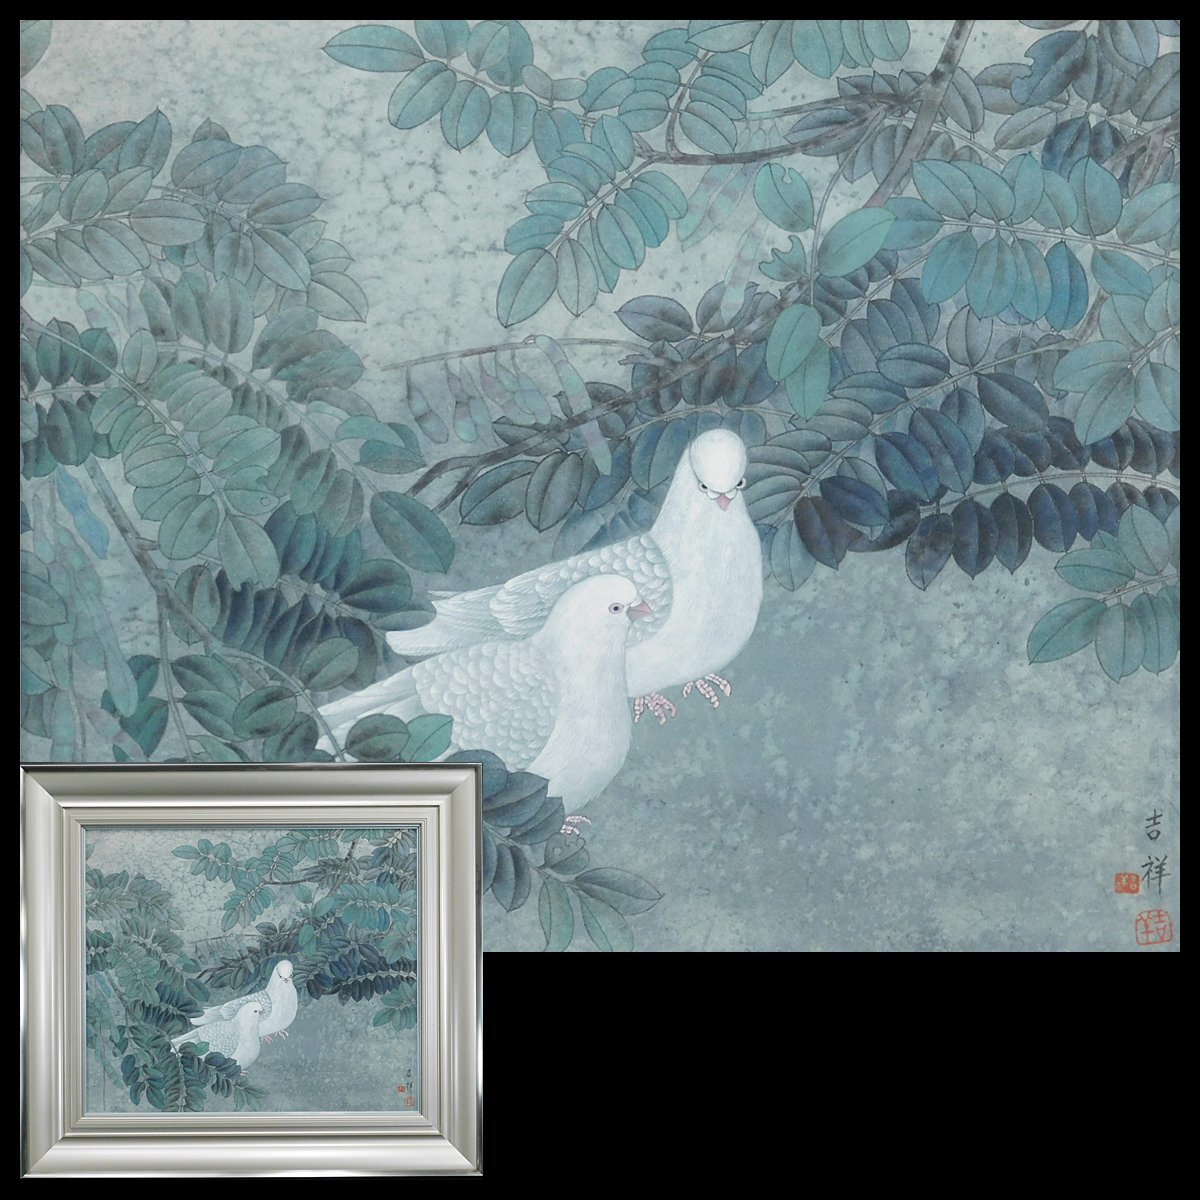 Aishinkaku Ranoko Kissho After the Rain (Pigeon) F10 Pintura en tinta Tapa blanda Enmarcada (Caja dedicada) Almacenamiento a largo plazo AC23081310, obra de arte, cuadro, Pintura en tinta